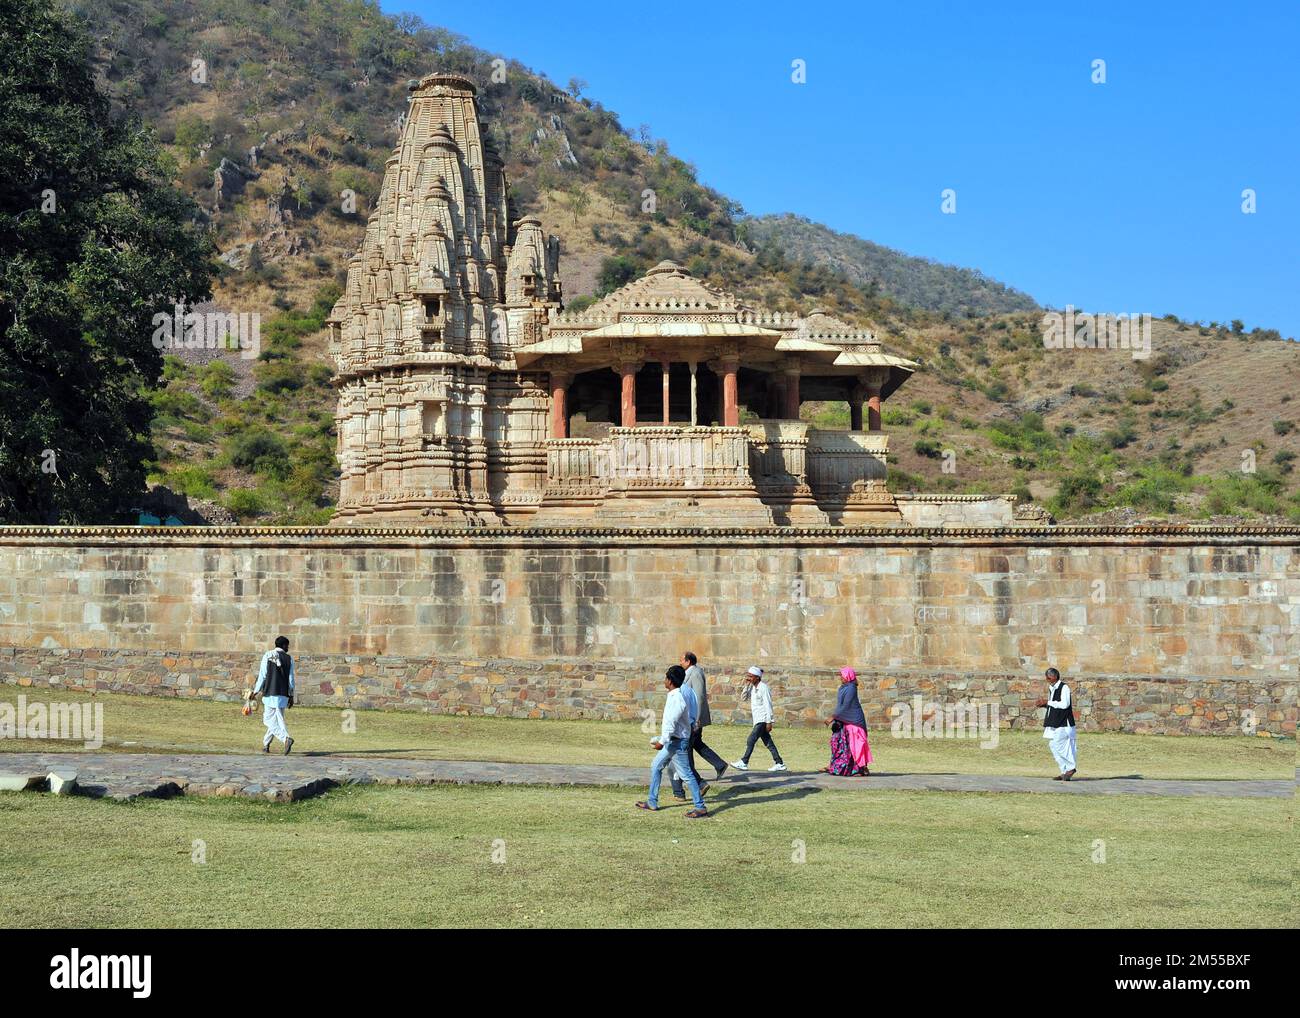 Le temple hindou entourant le fort abandonné maudit ruiné dans la place prétendument hantée Bhangarh fort Banque D'Images